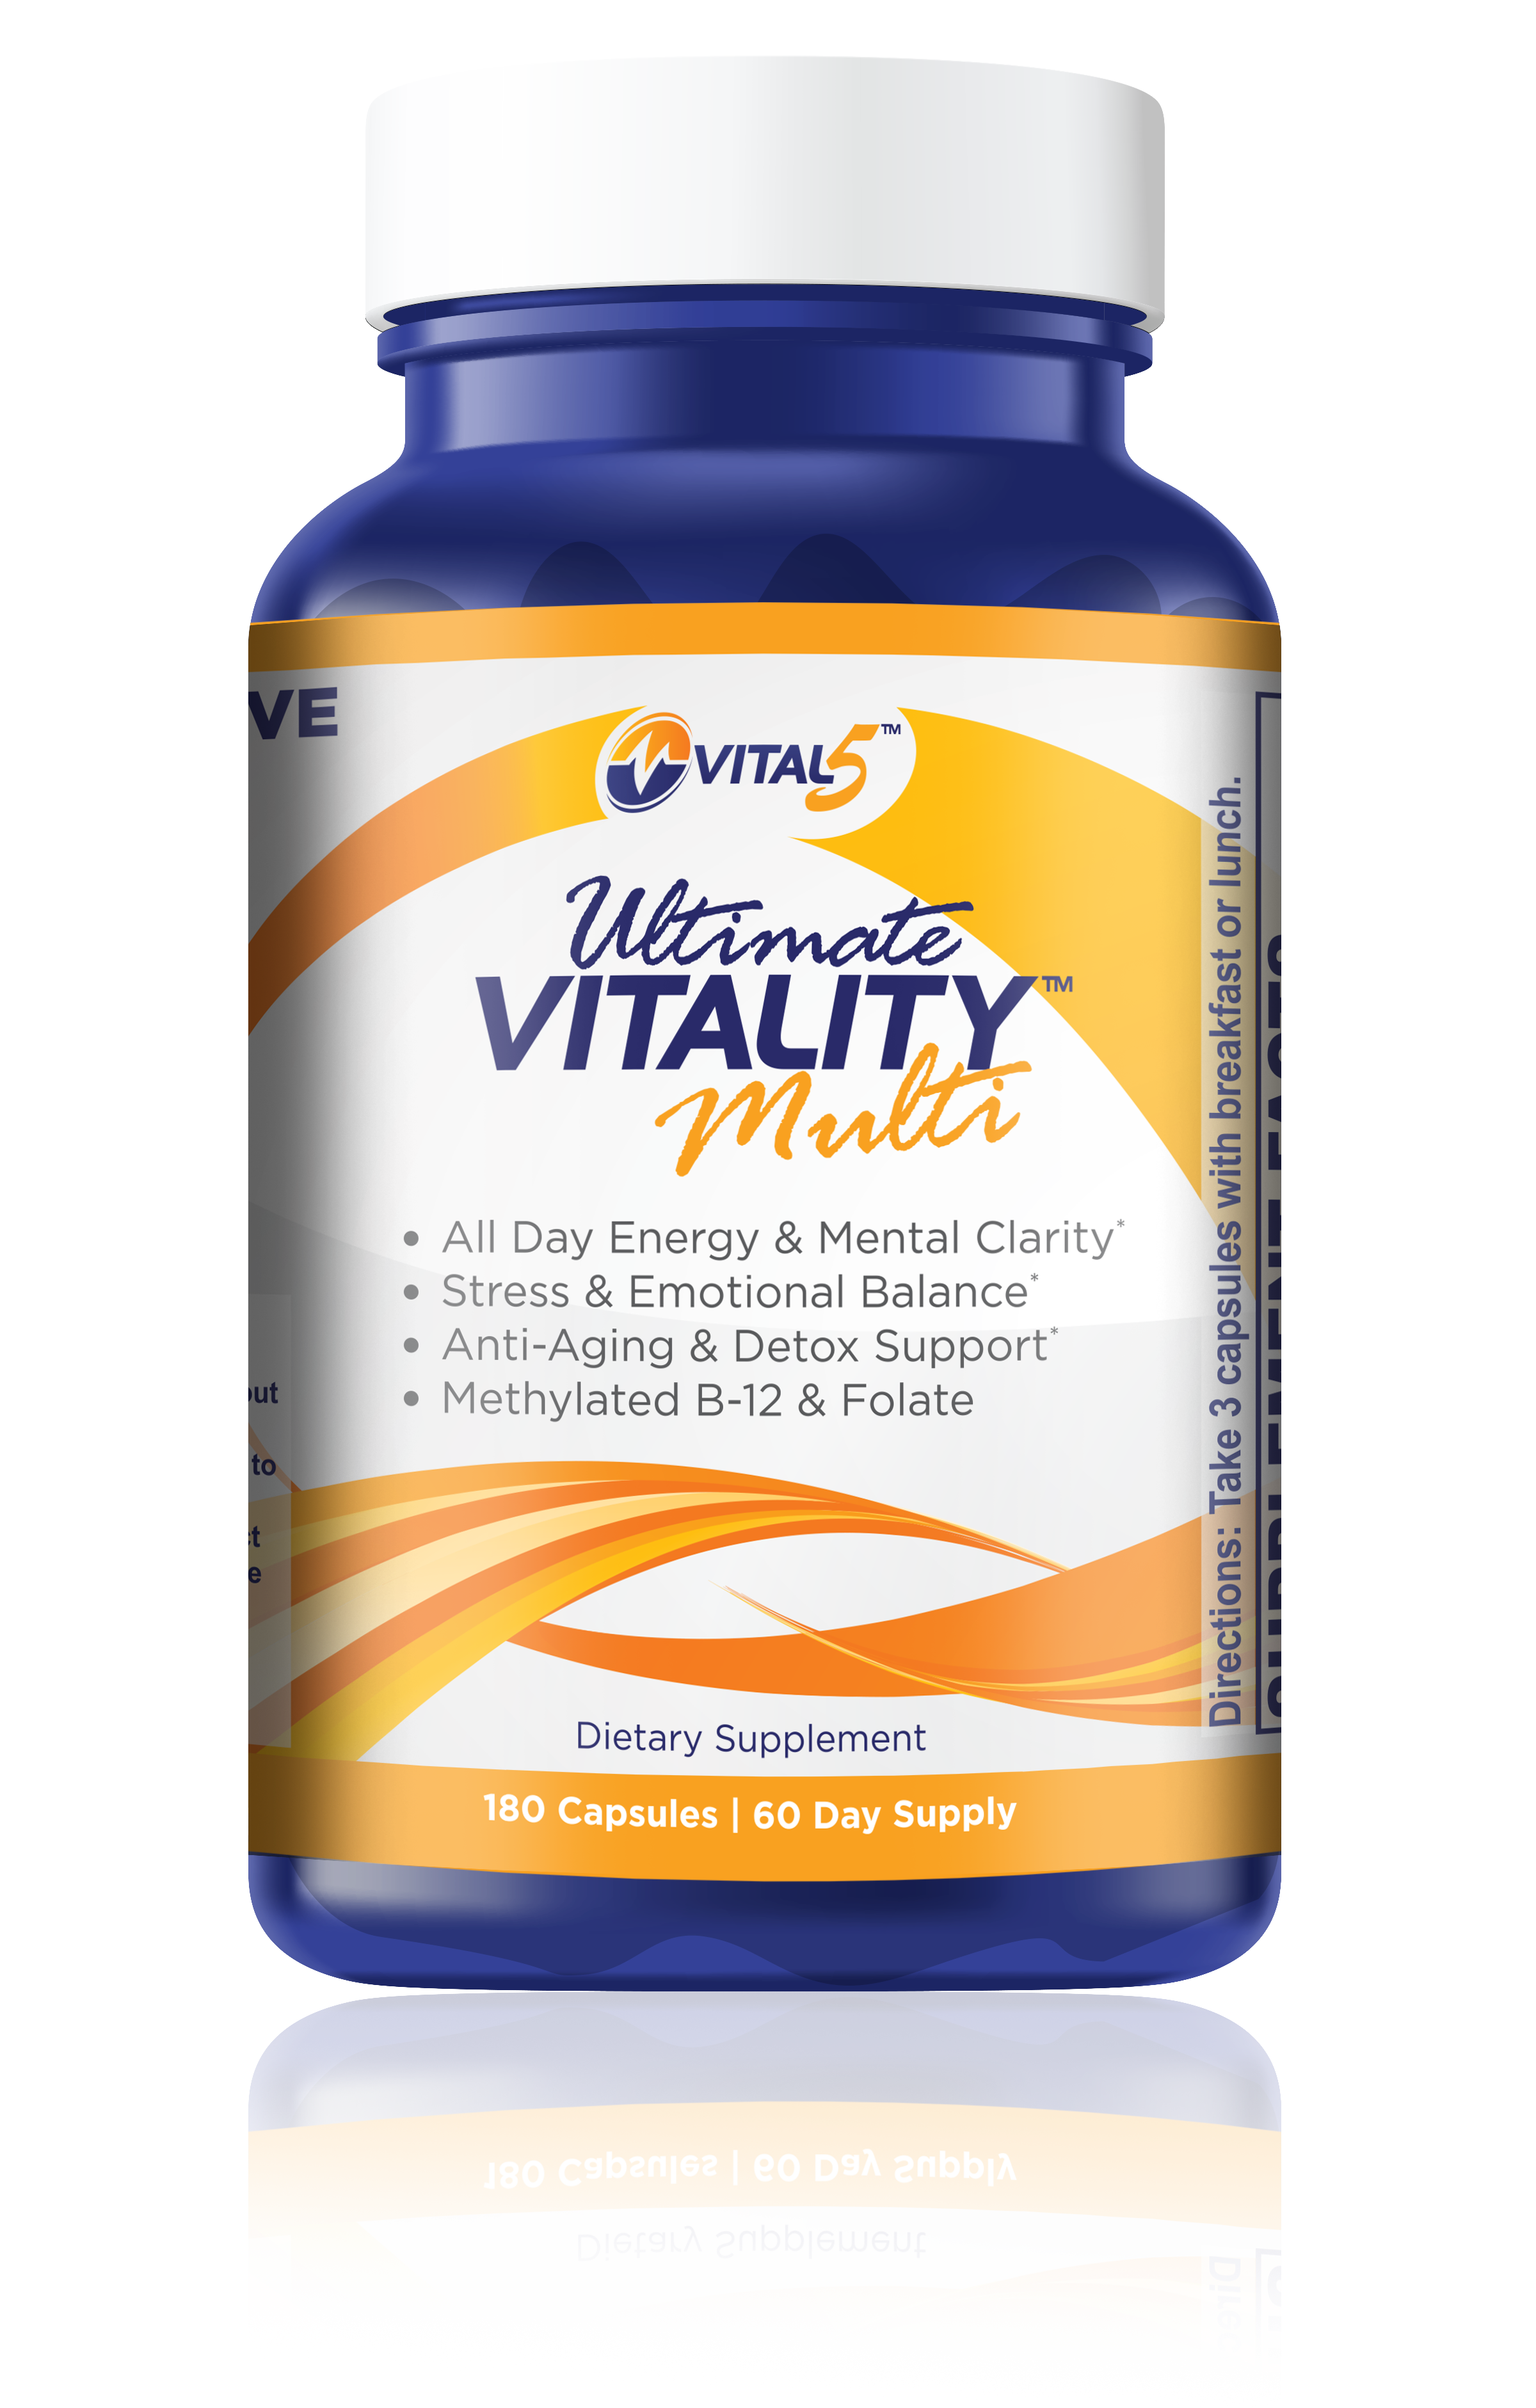 Vital 5 Ultimate Vitality Multi - NEW & IMPROVED FORMULA!